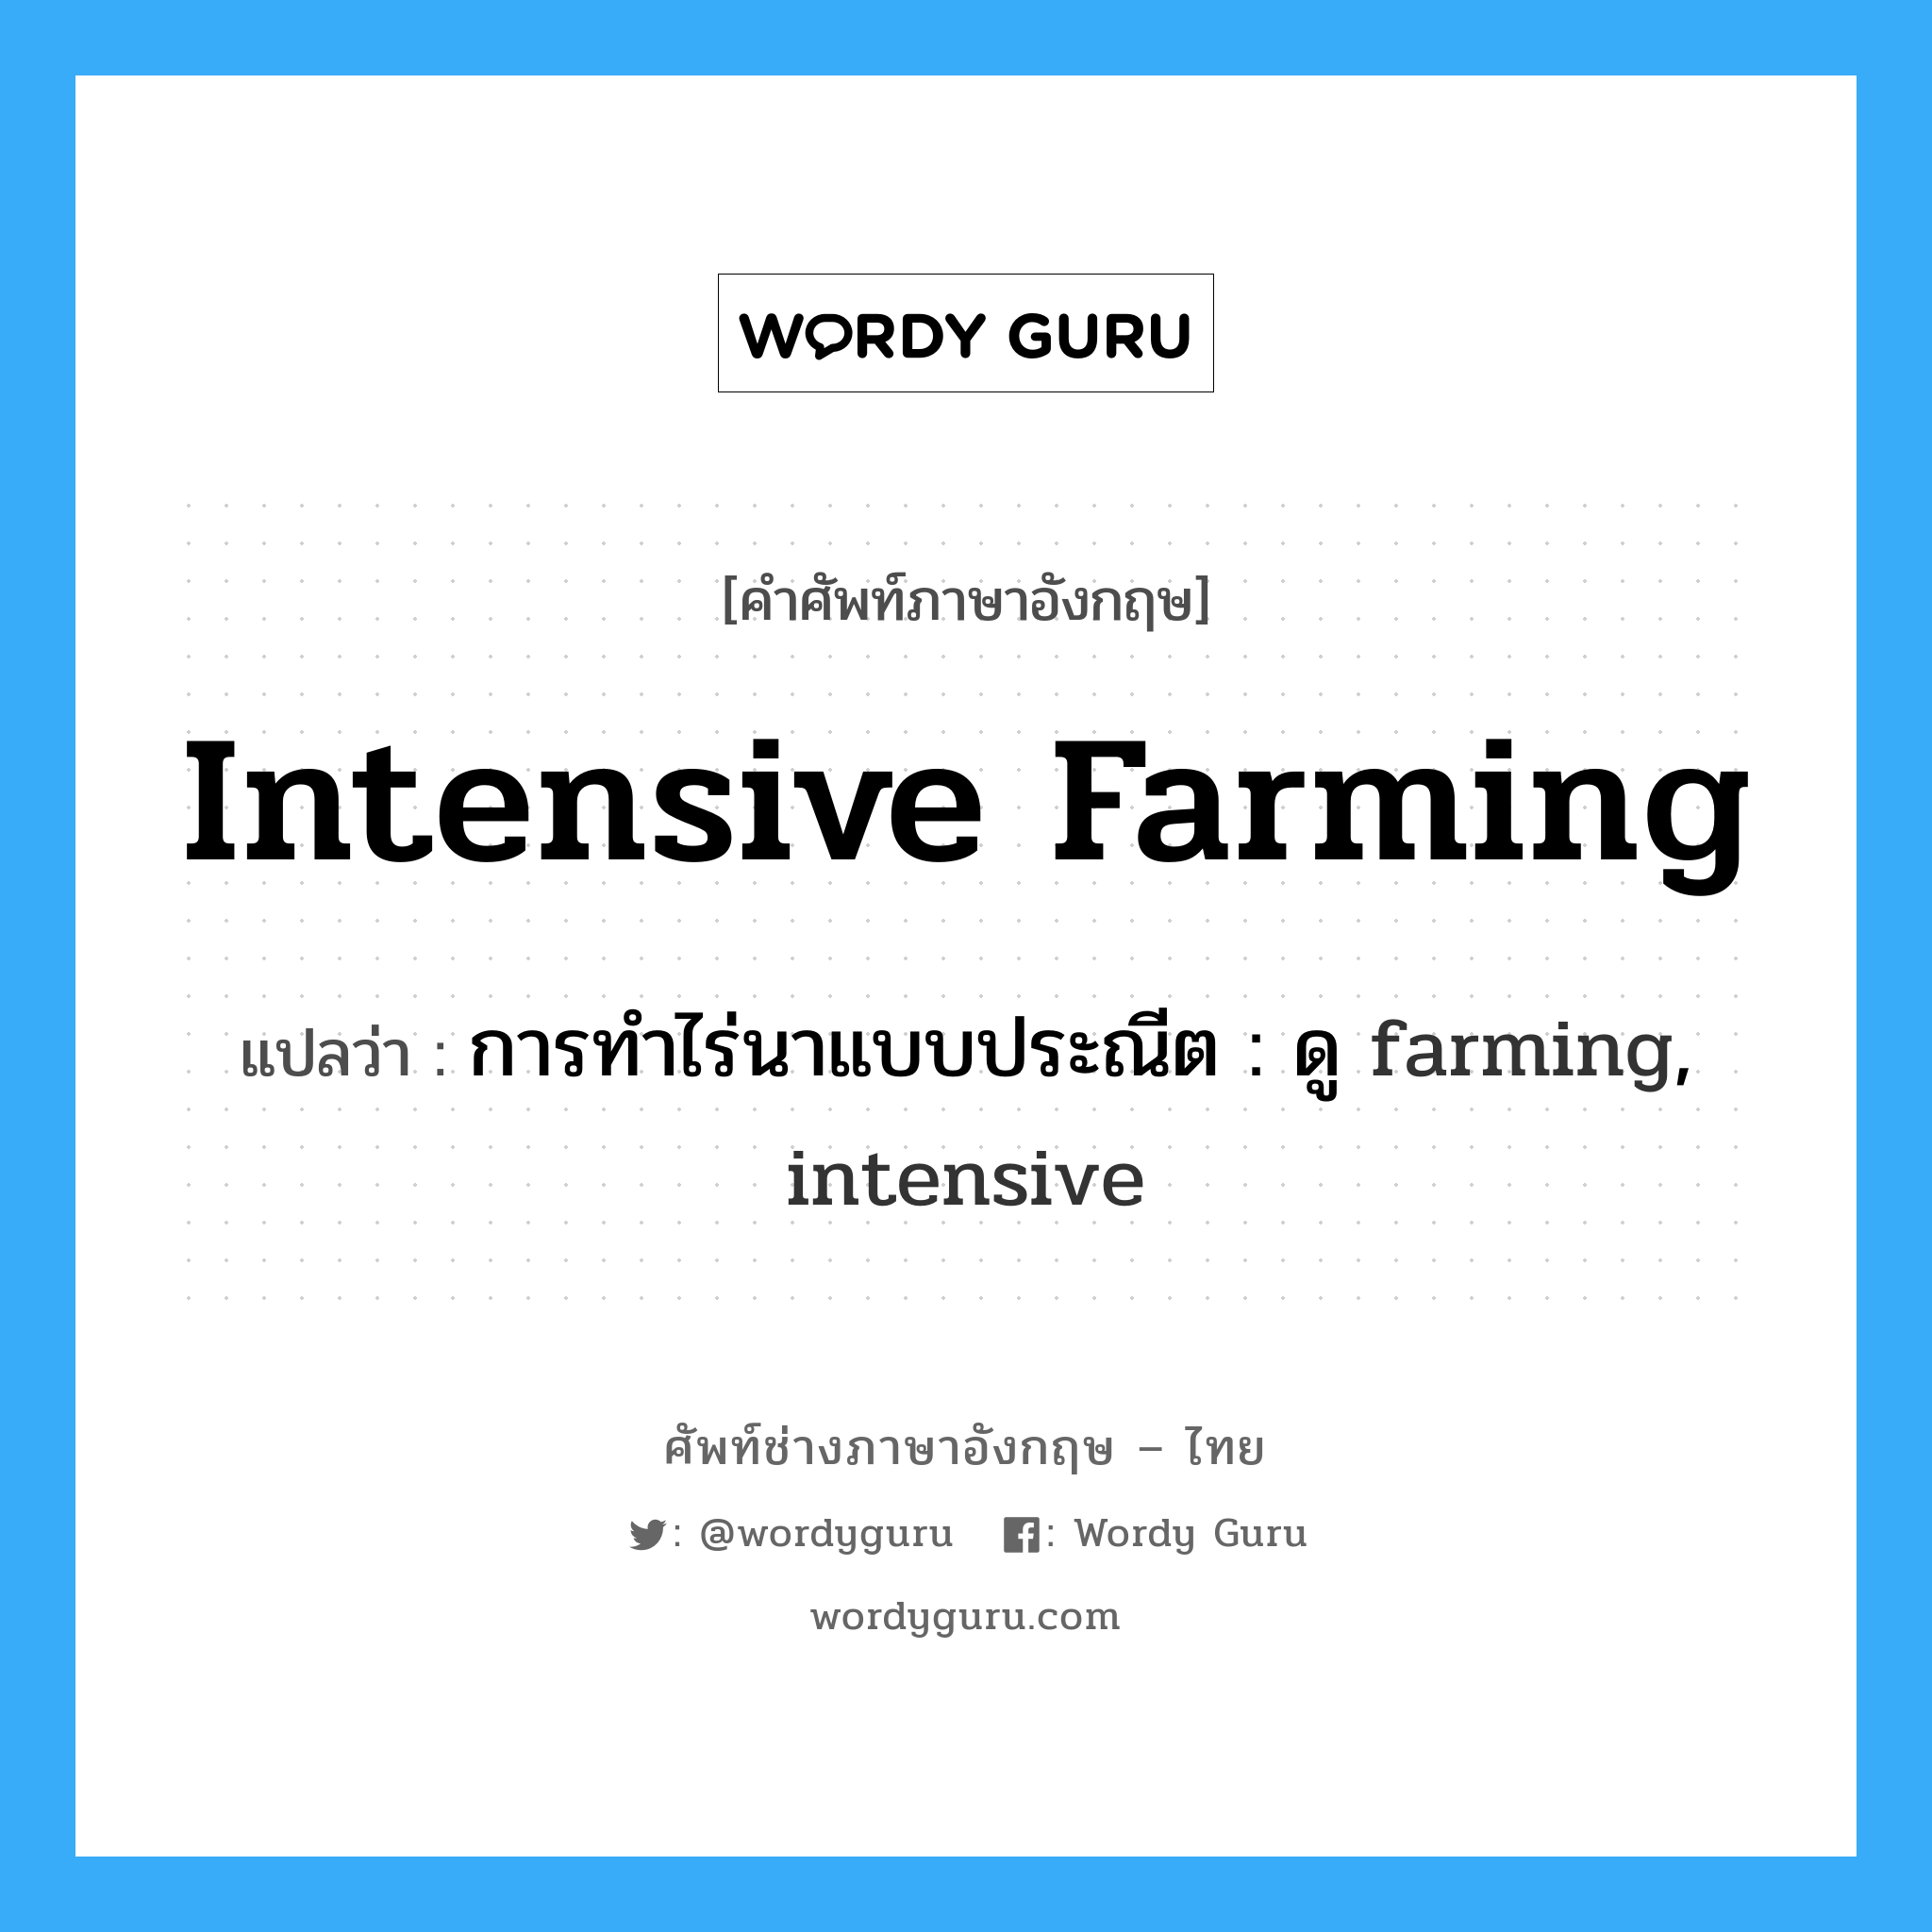 การทำไร่นาแบบประณีต : ดู farming, intensive ภาษาอังกฤษ?, คำศัพท์ช่างภาษาอังกฤษ - ไทย การทำไร่นาแบบประณีต : ดู farming, intensive คำศัพท์ภาษาอังกฤษ การทำไร่นาแบบประณีต : ดู farming, intensive แปลว่า intensive farming